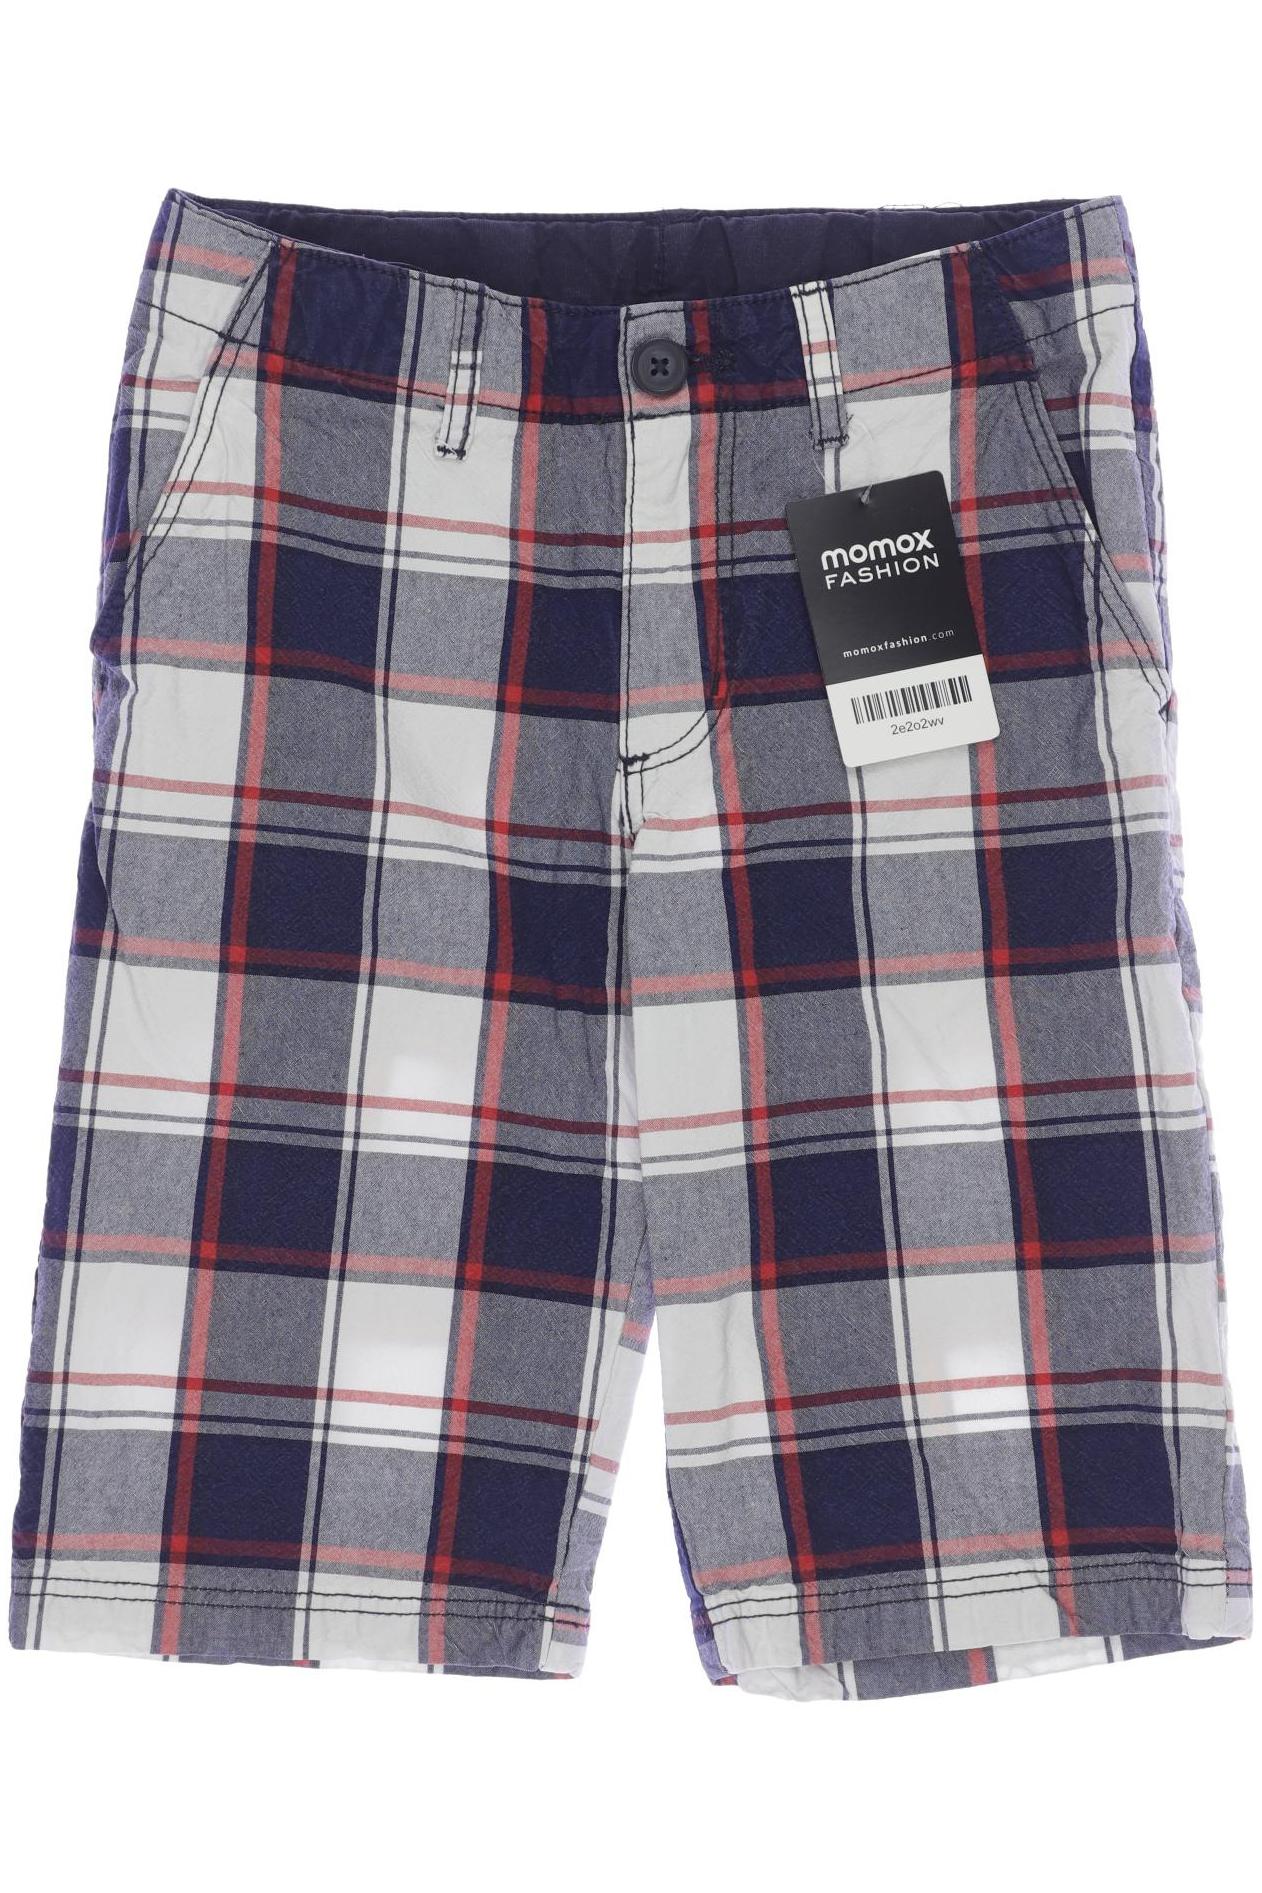 H&M Herren Shorts, marineblau, Gr. 140 von H&M